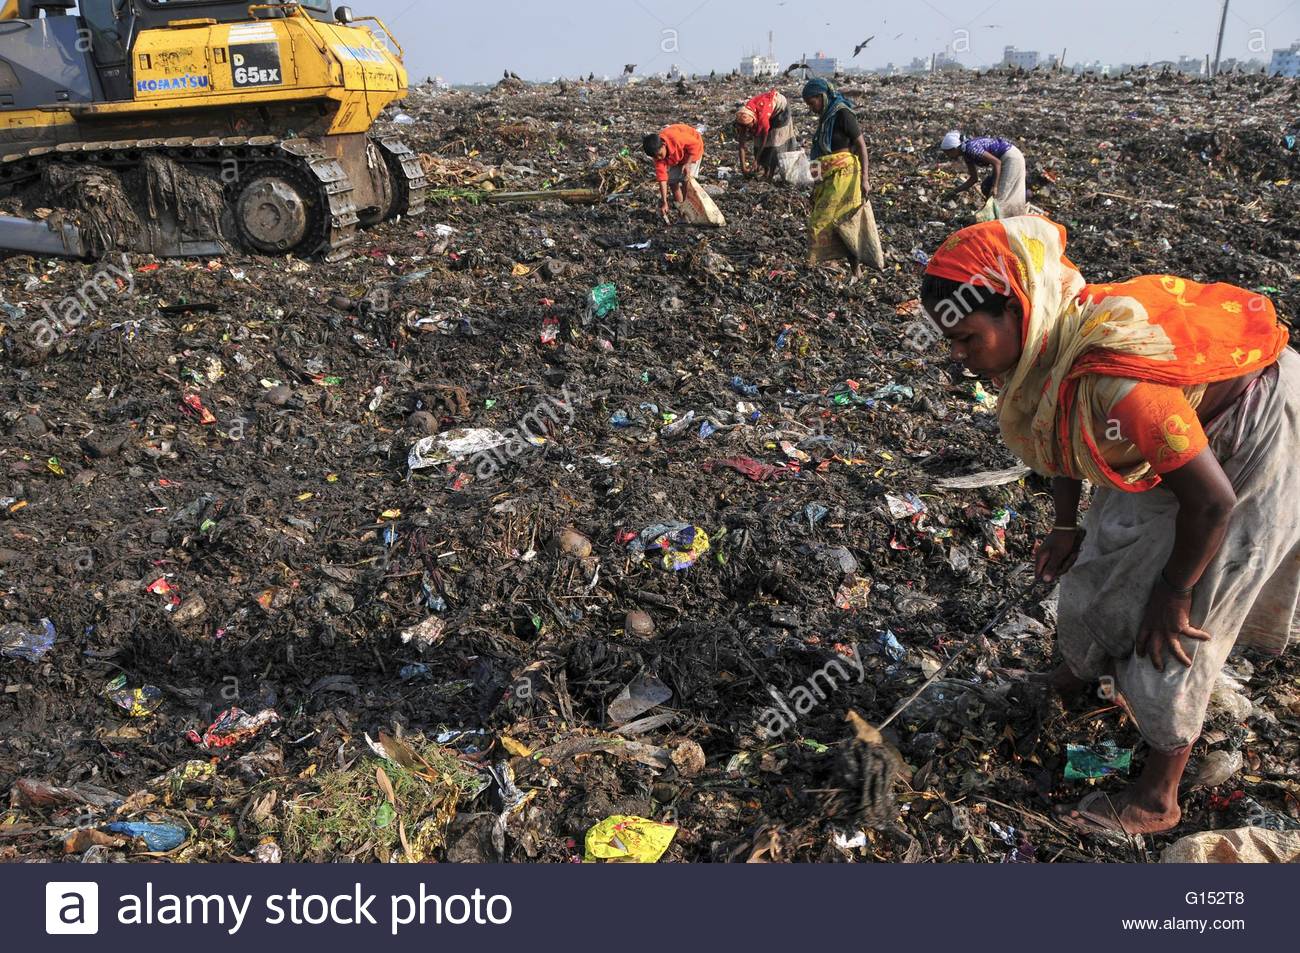 bangladesh-garbage-dump-G152T8.jpg